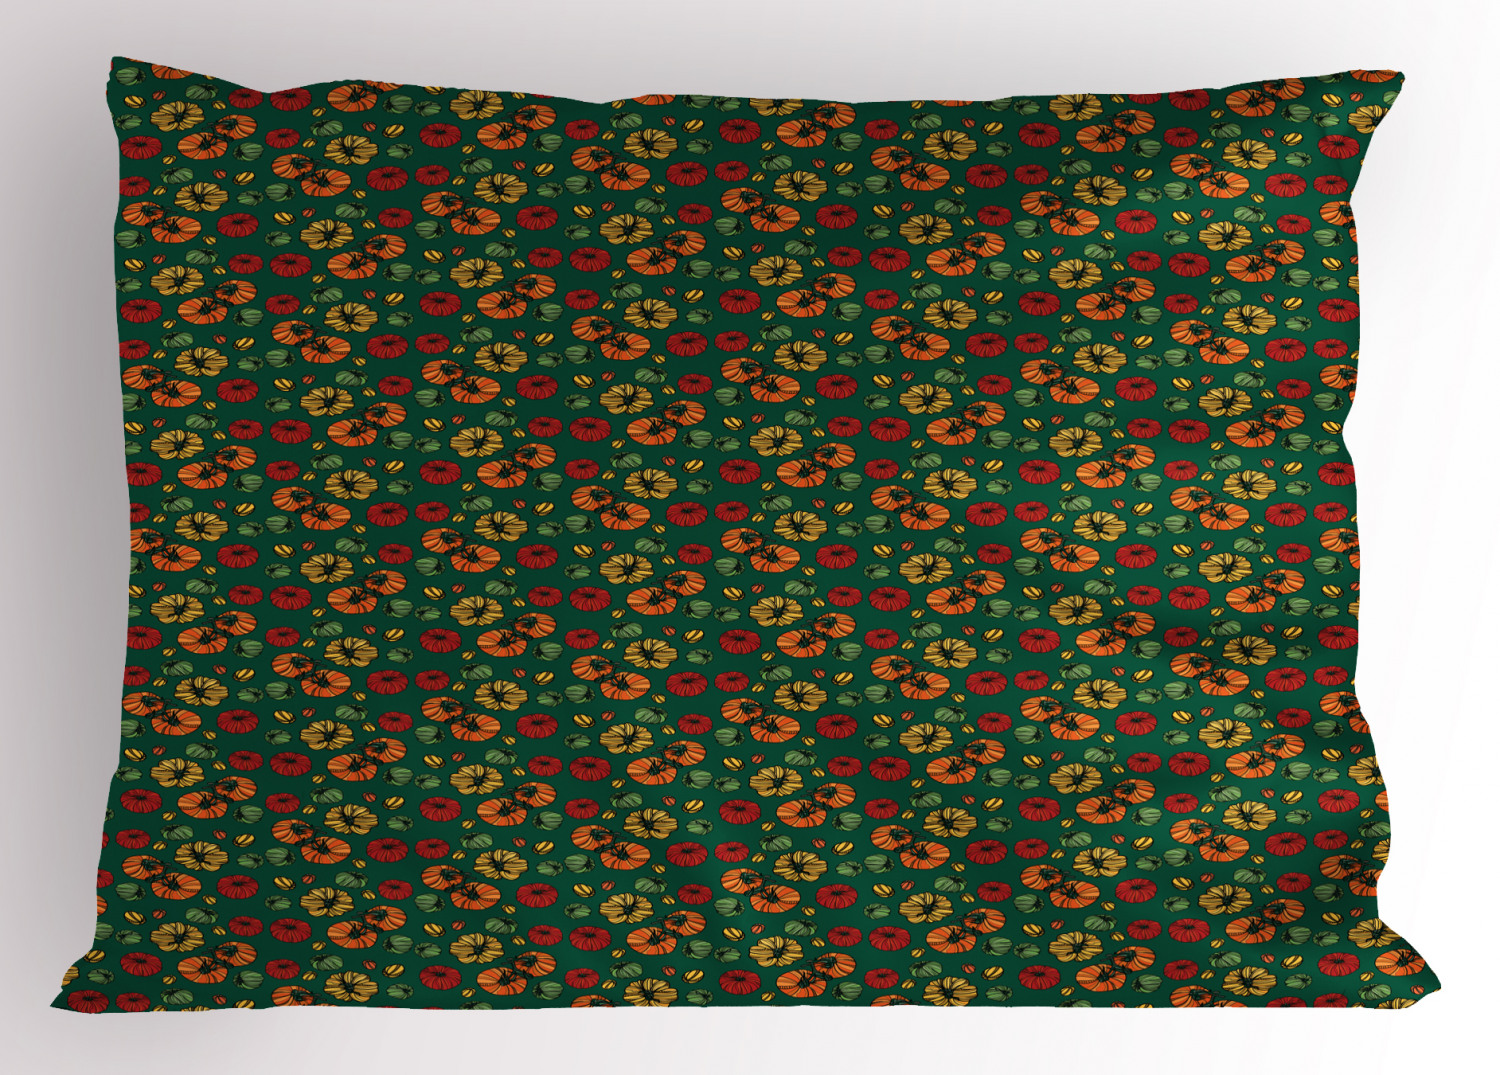 Details about   Nature Pattern Pillow Sham Decorative Pillowcase 3 Sizes Bedroom Decoration 